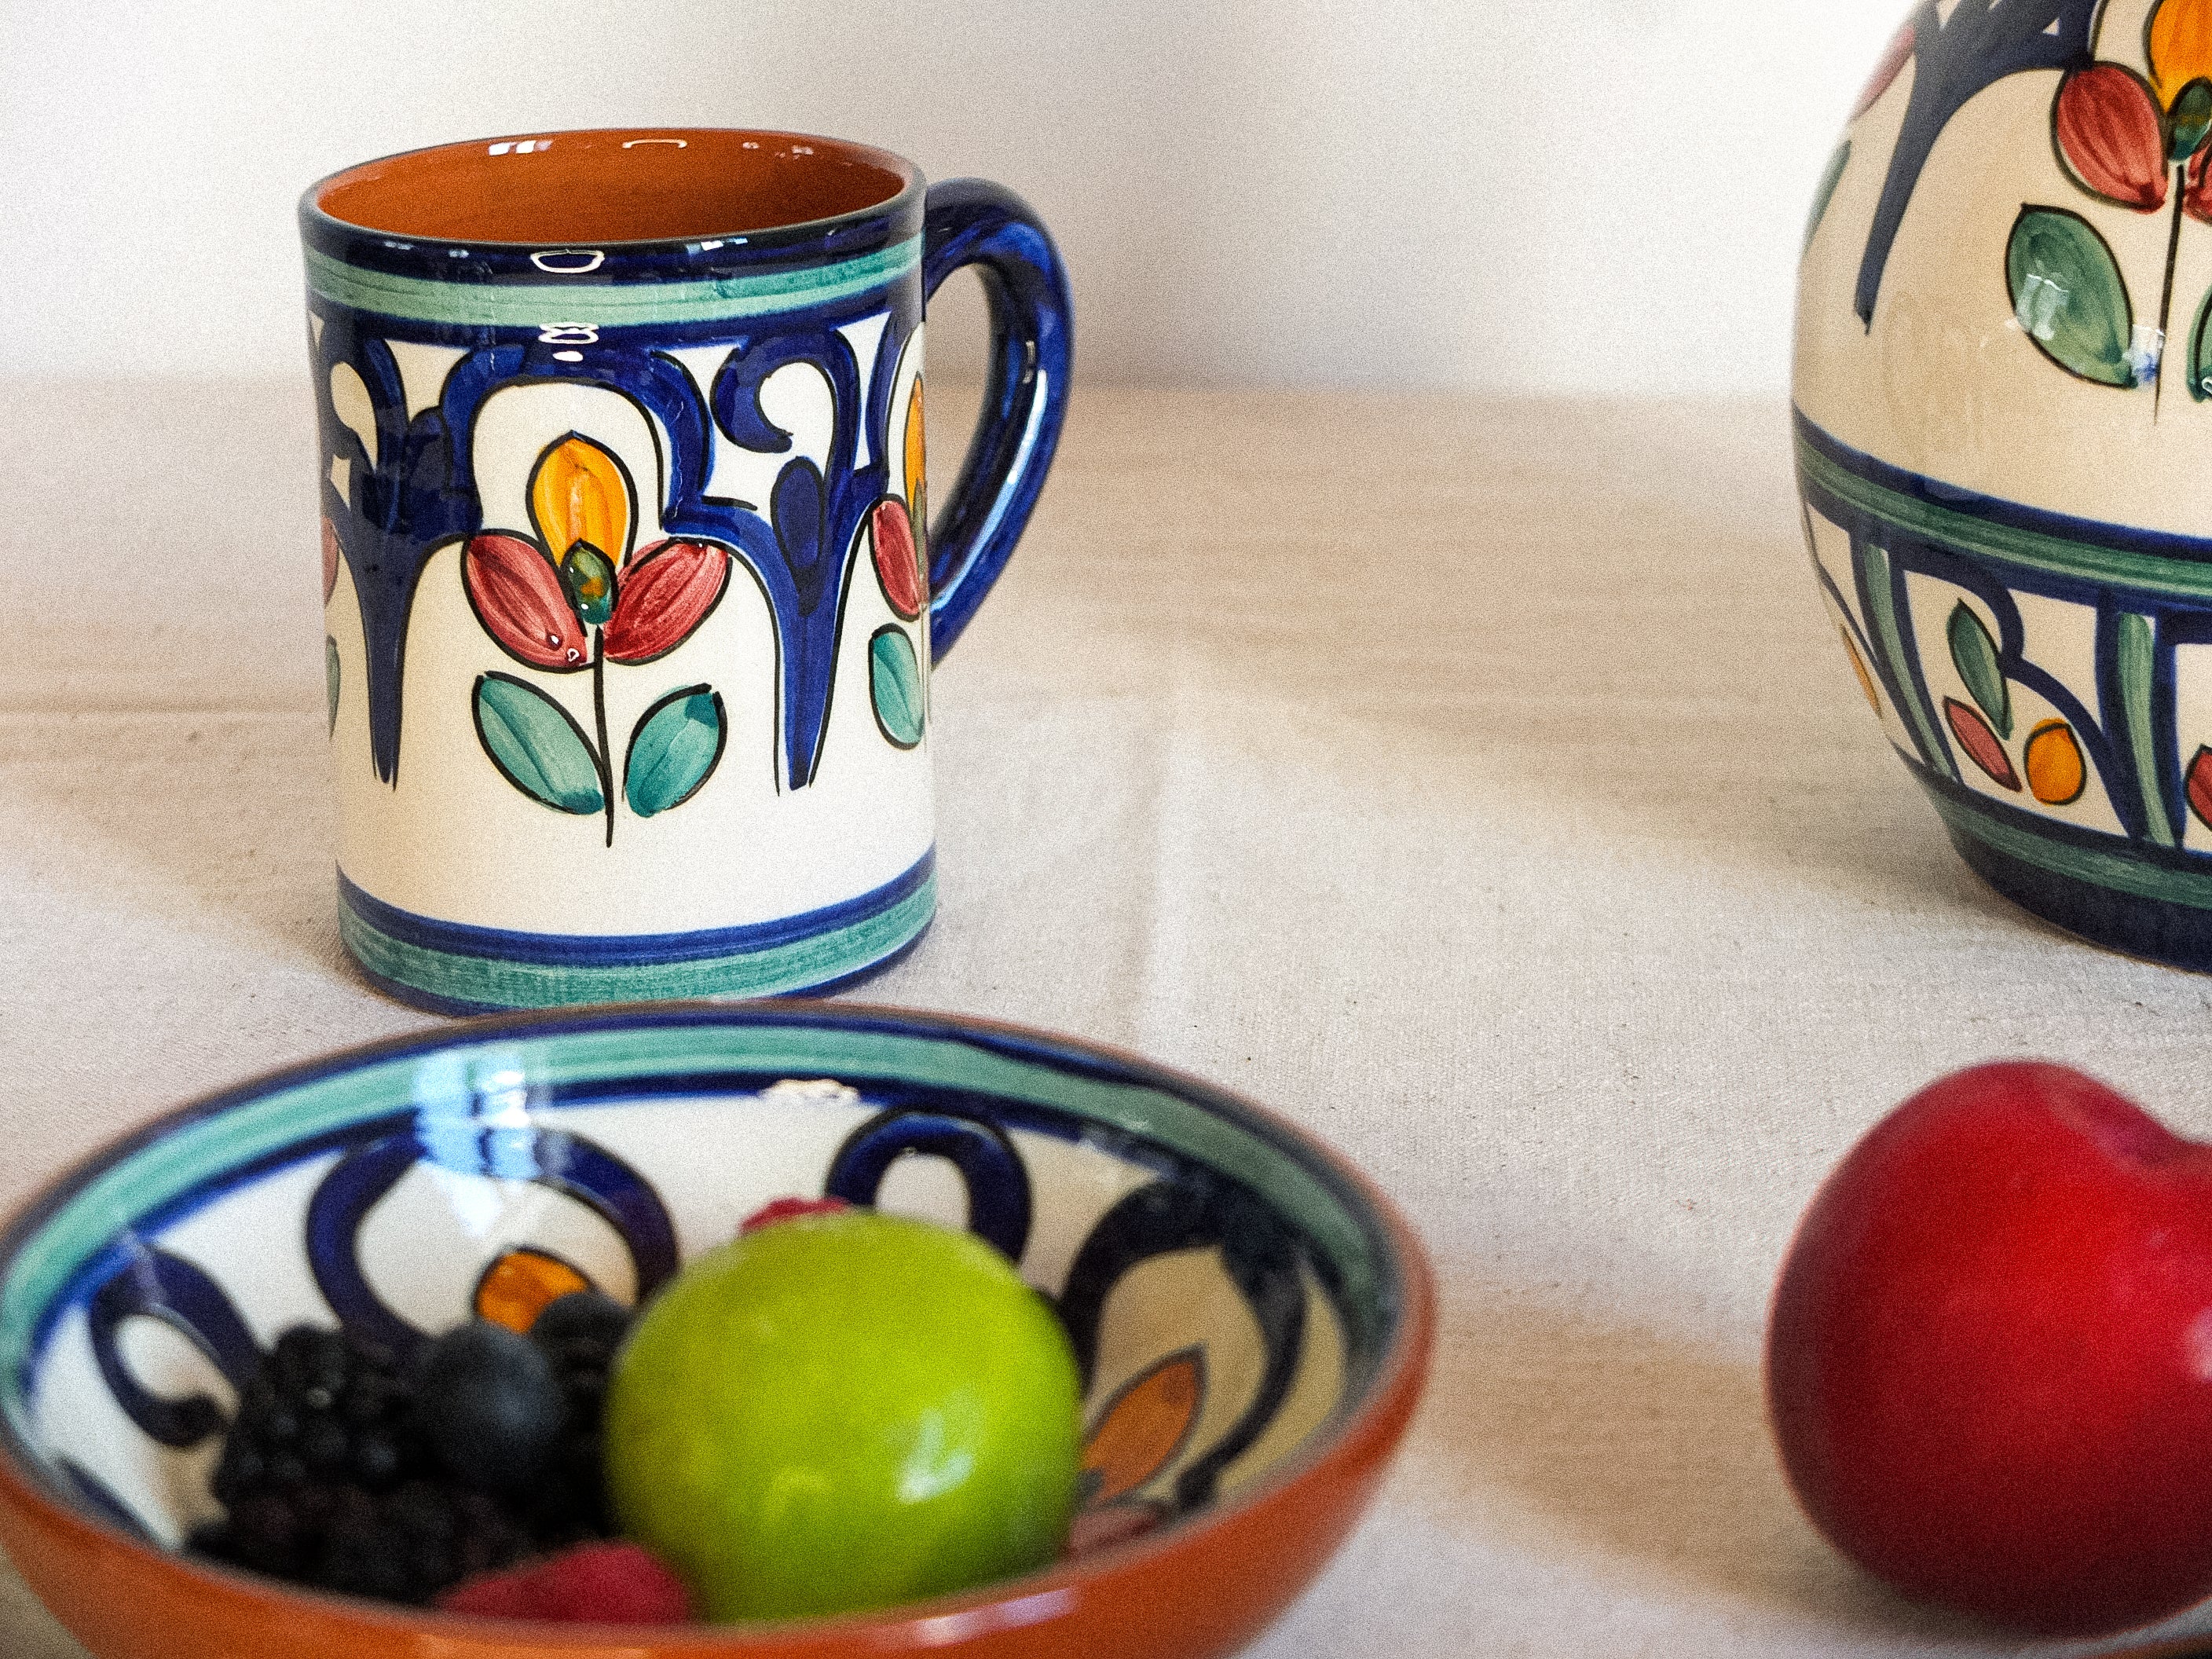 Tasses en céramique à motifs floraux colorés, typiquement portugais. Fabriqués et peints à la main au Portugal.